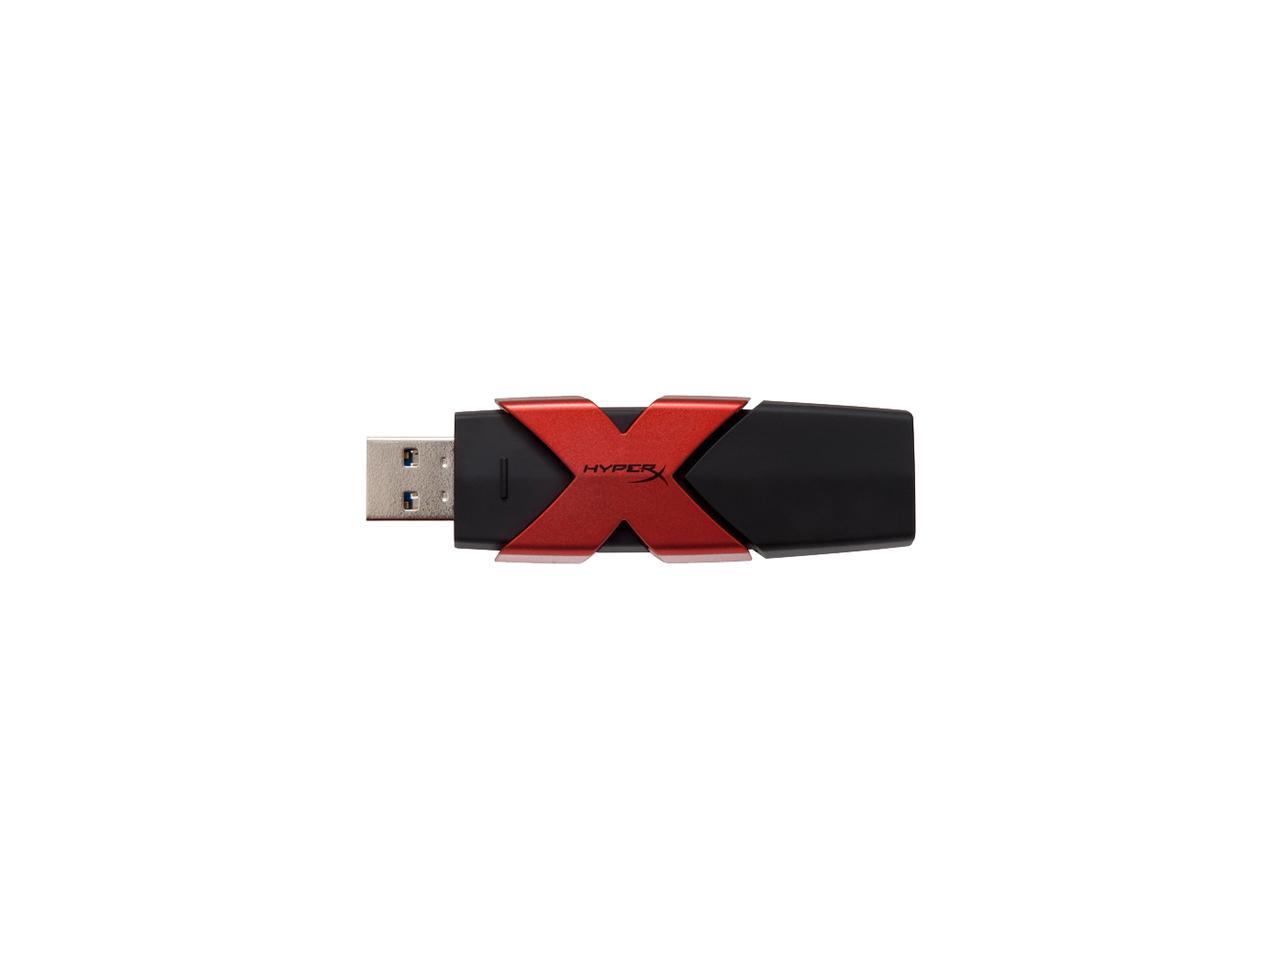 HyperX Savage 512GB USB 3.1/3.0 Flash Drive Model HXS3/512GB